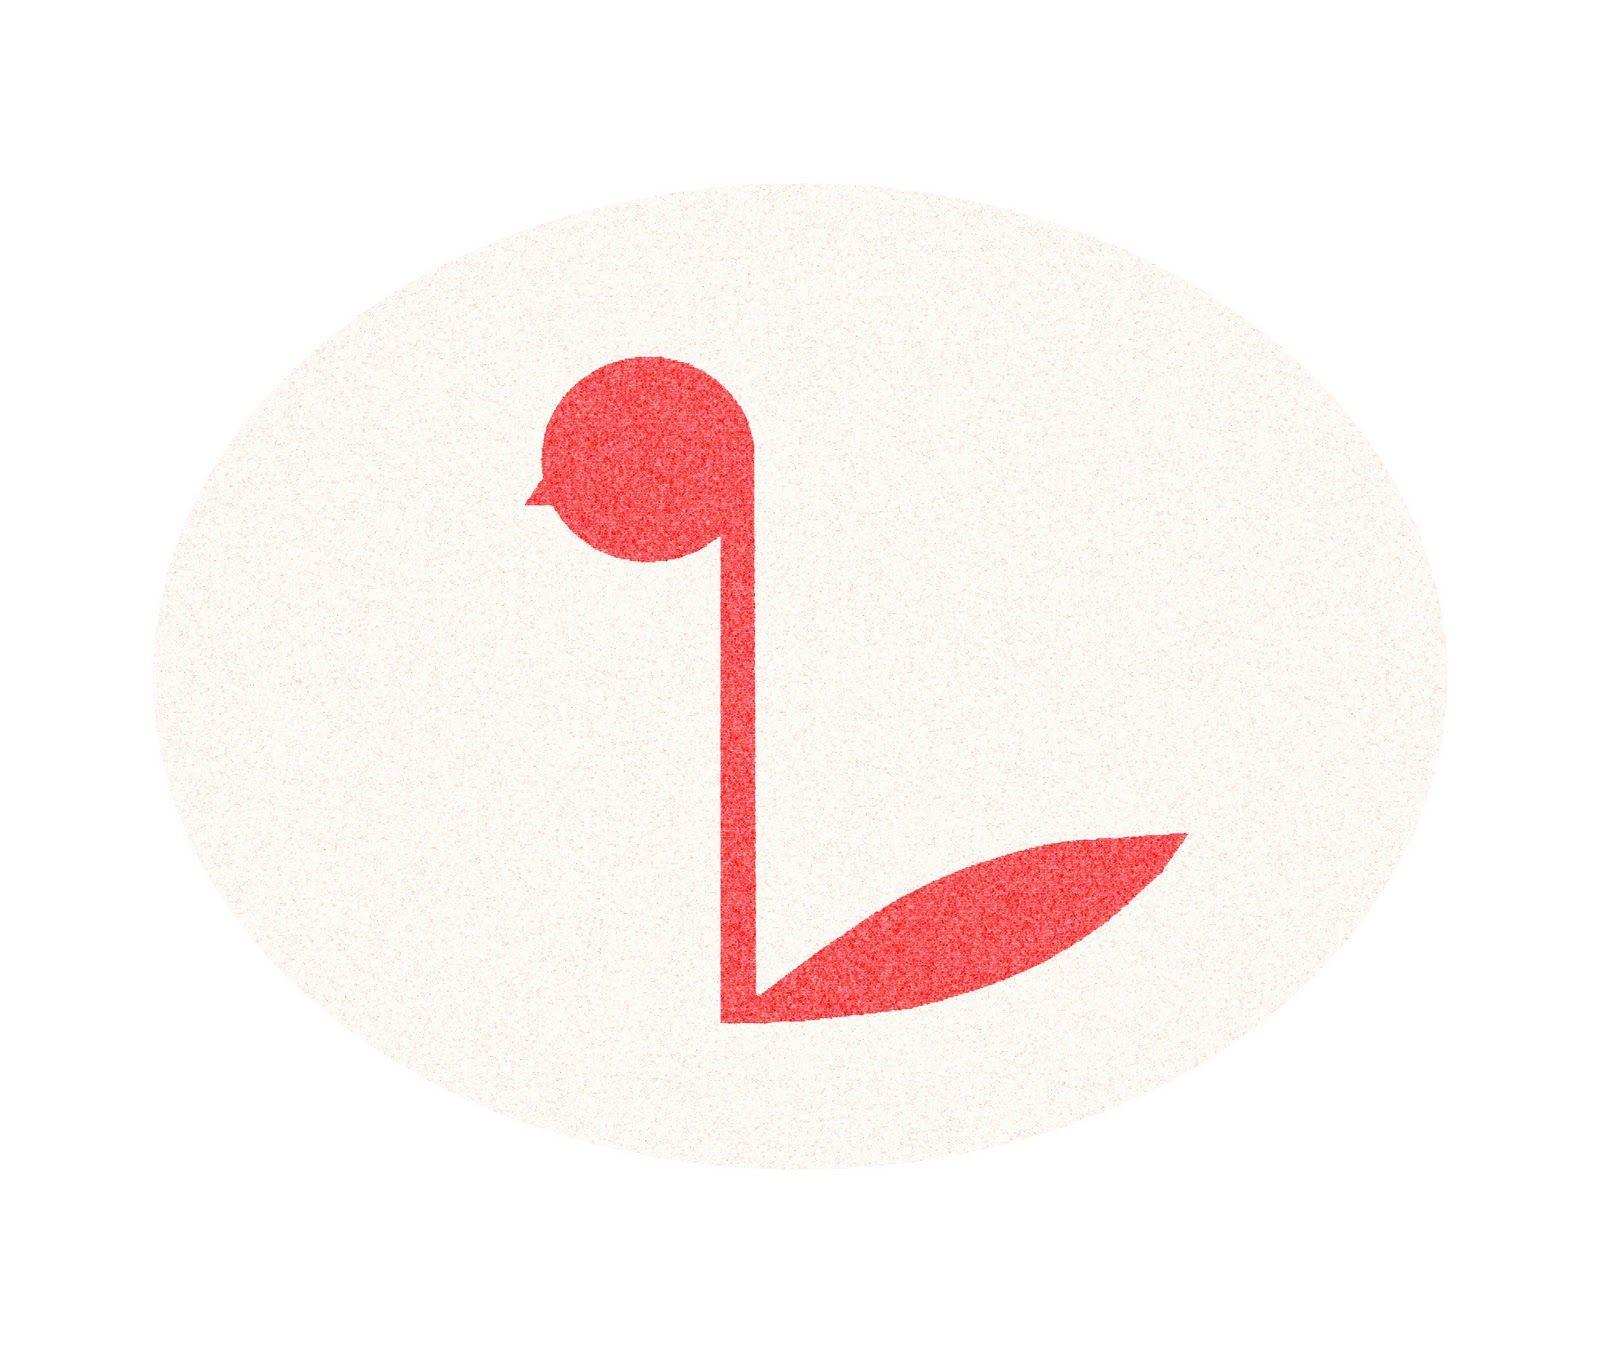 Red Swan in Circle Logo - Qianqian Li Design: Final Logo design